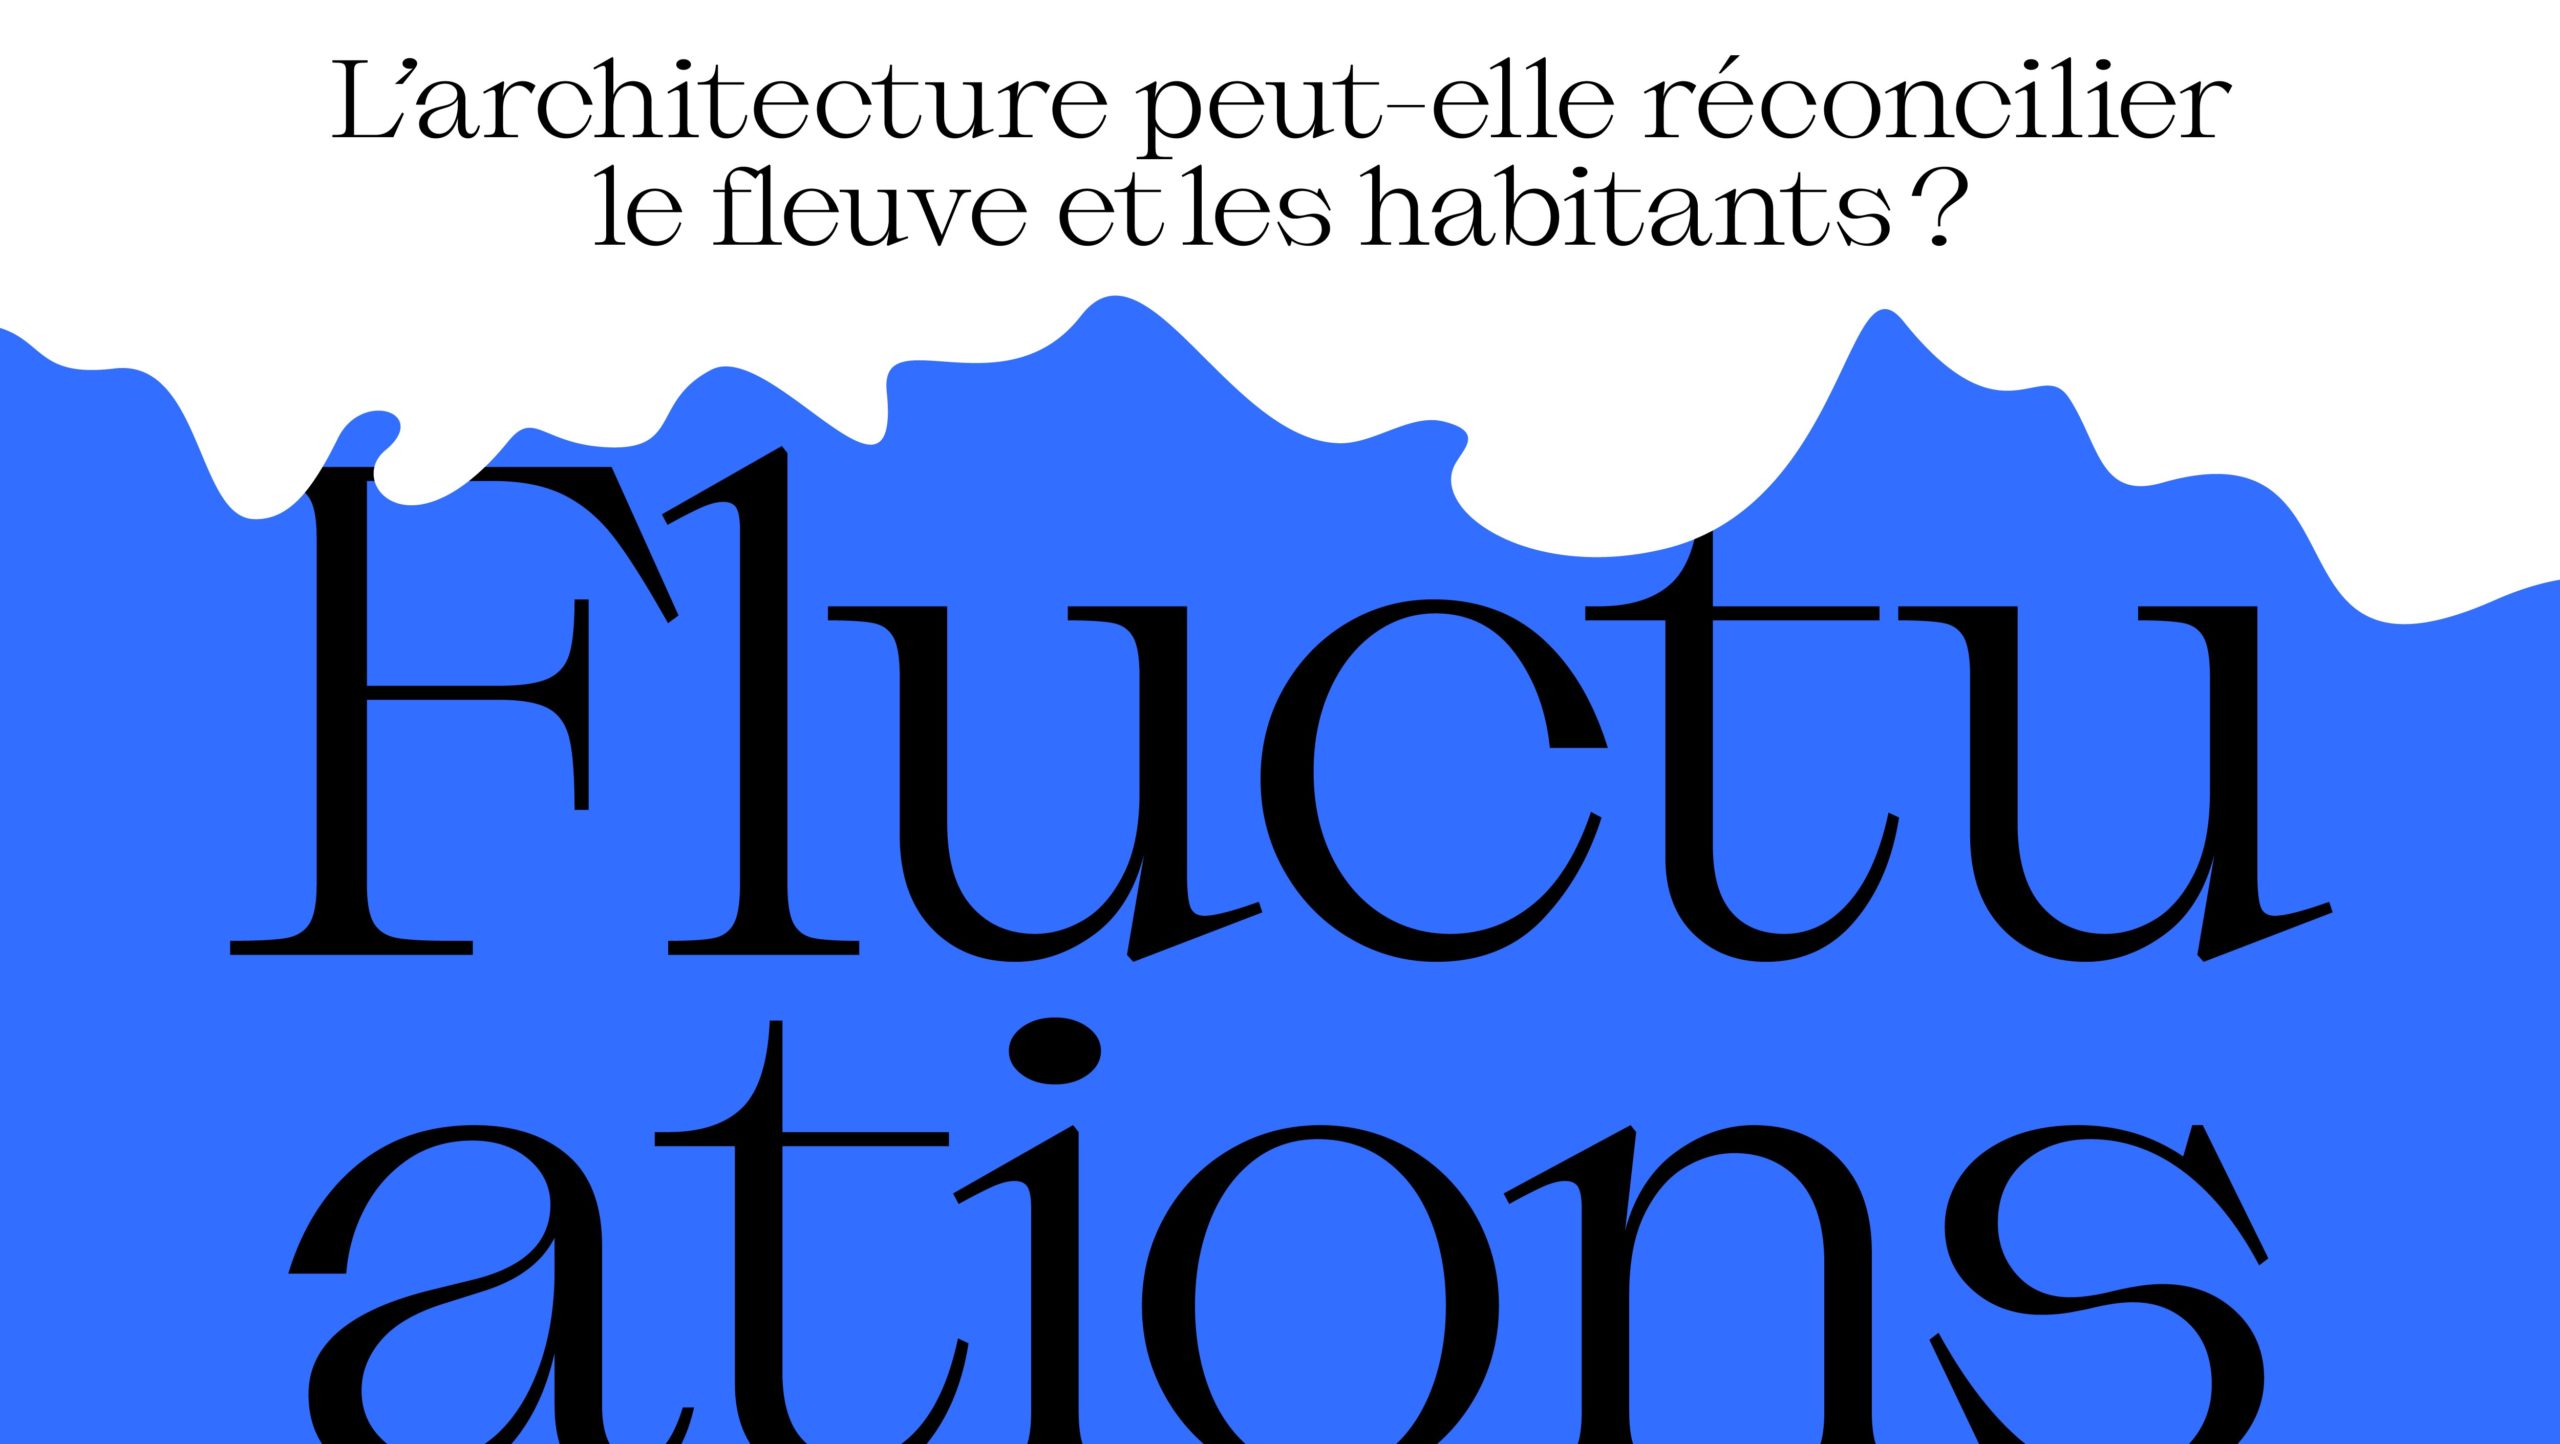 Exposition Fluctuations à l'Institut Culturel d'Architecture à Liège